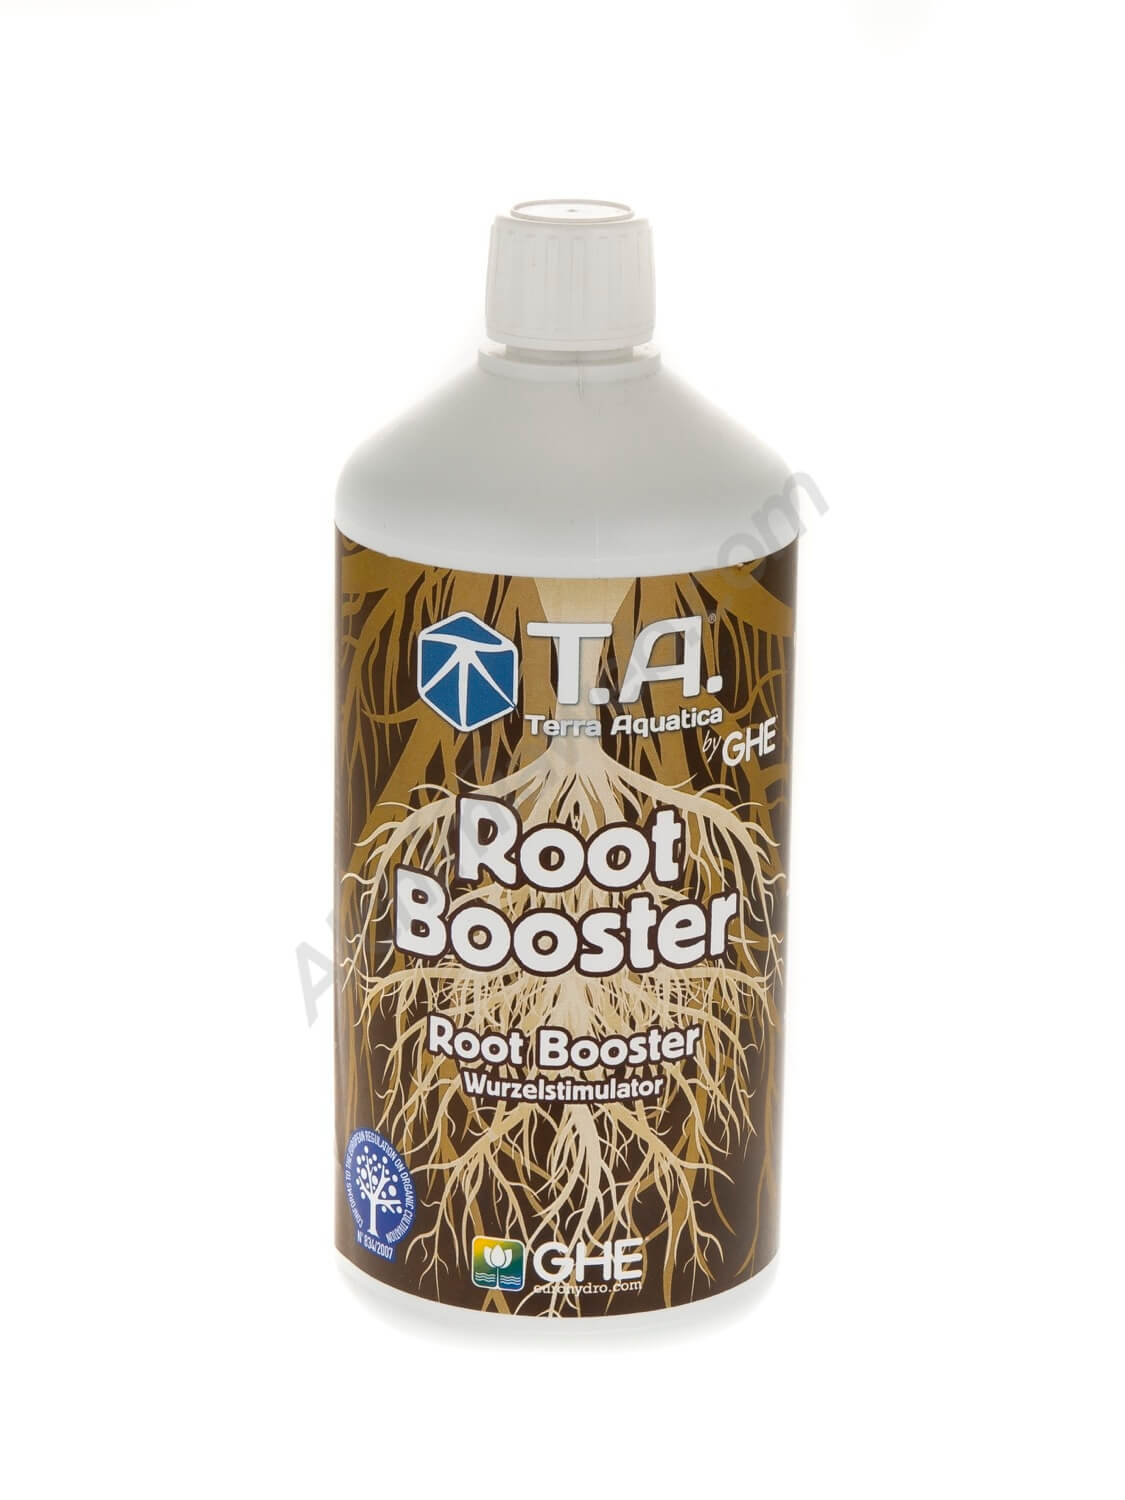 Root Booster by Terra Aquatica